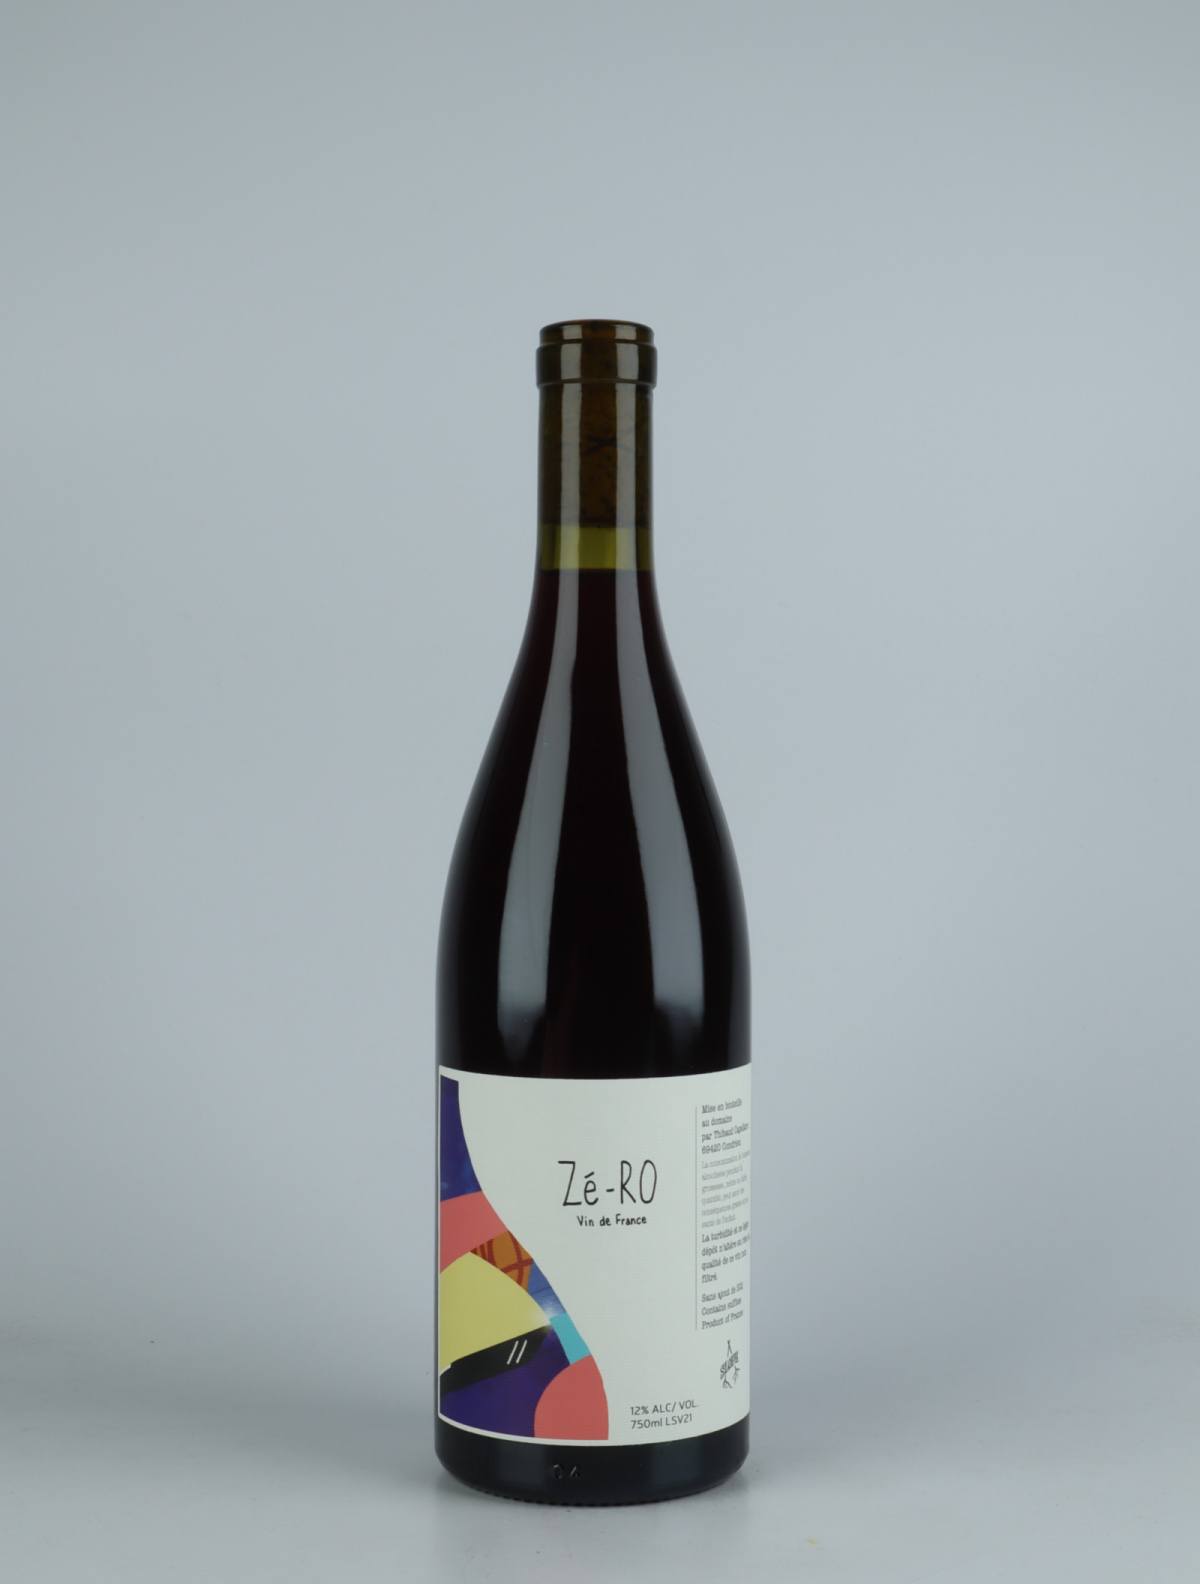 En flaske 2021 Zé-RO Rødvin fra Slope, Rhône i Frankrig